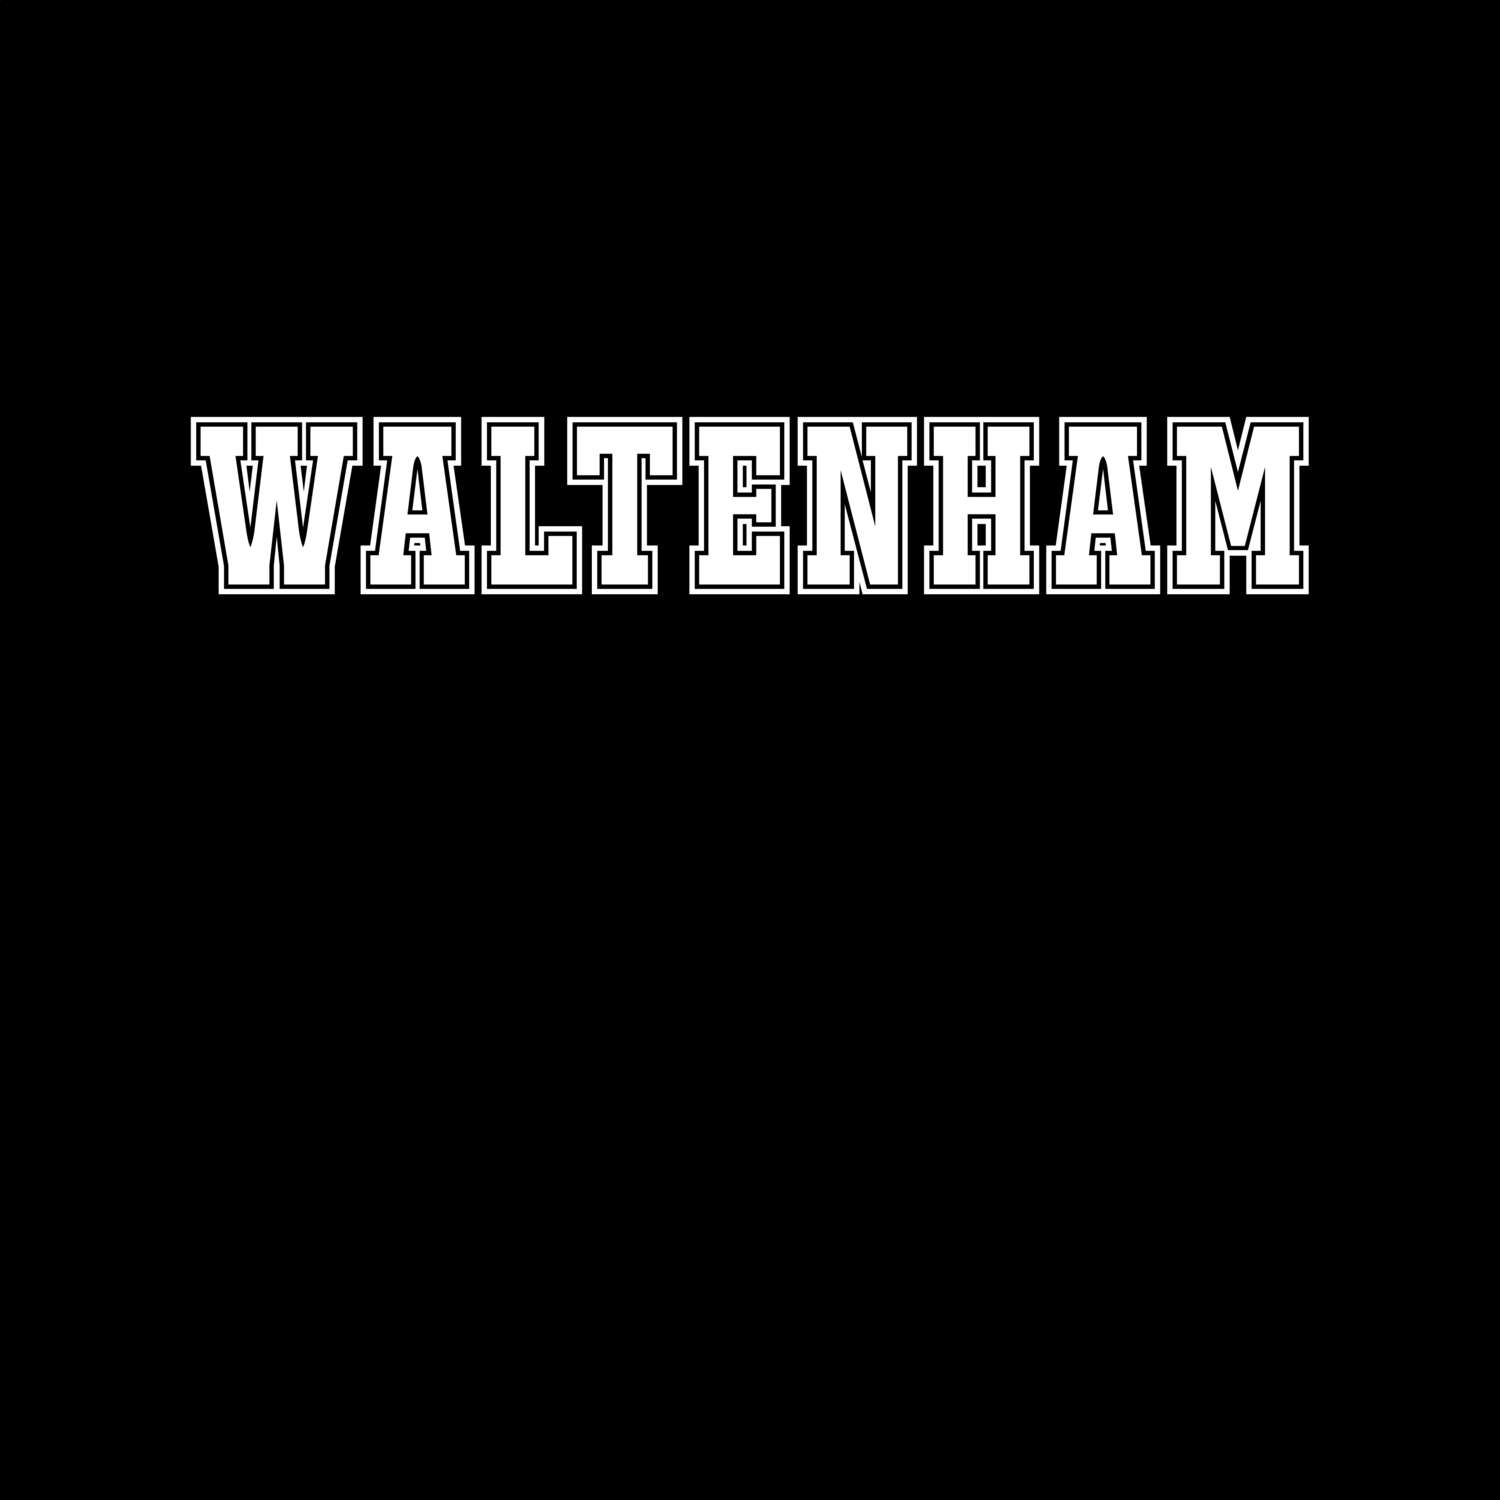 Waltenham T-Shirt »Classic«